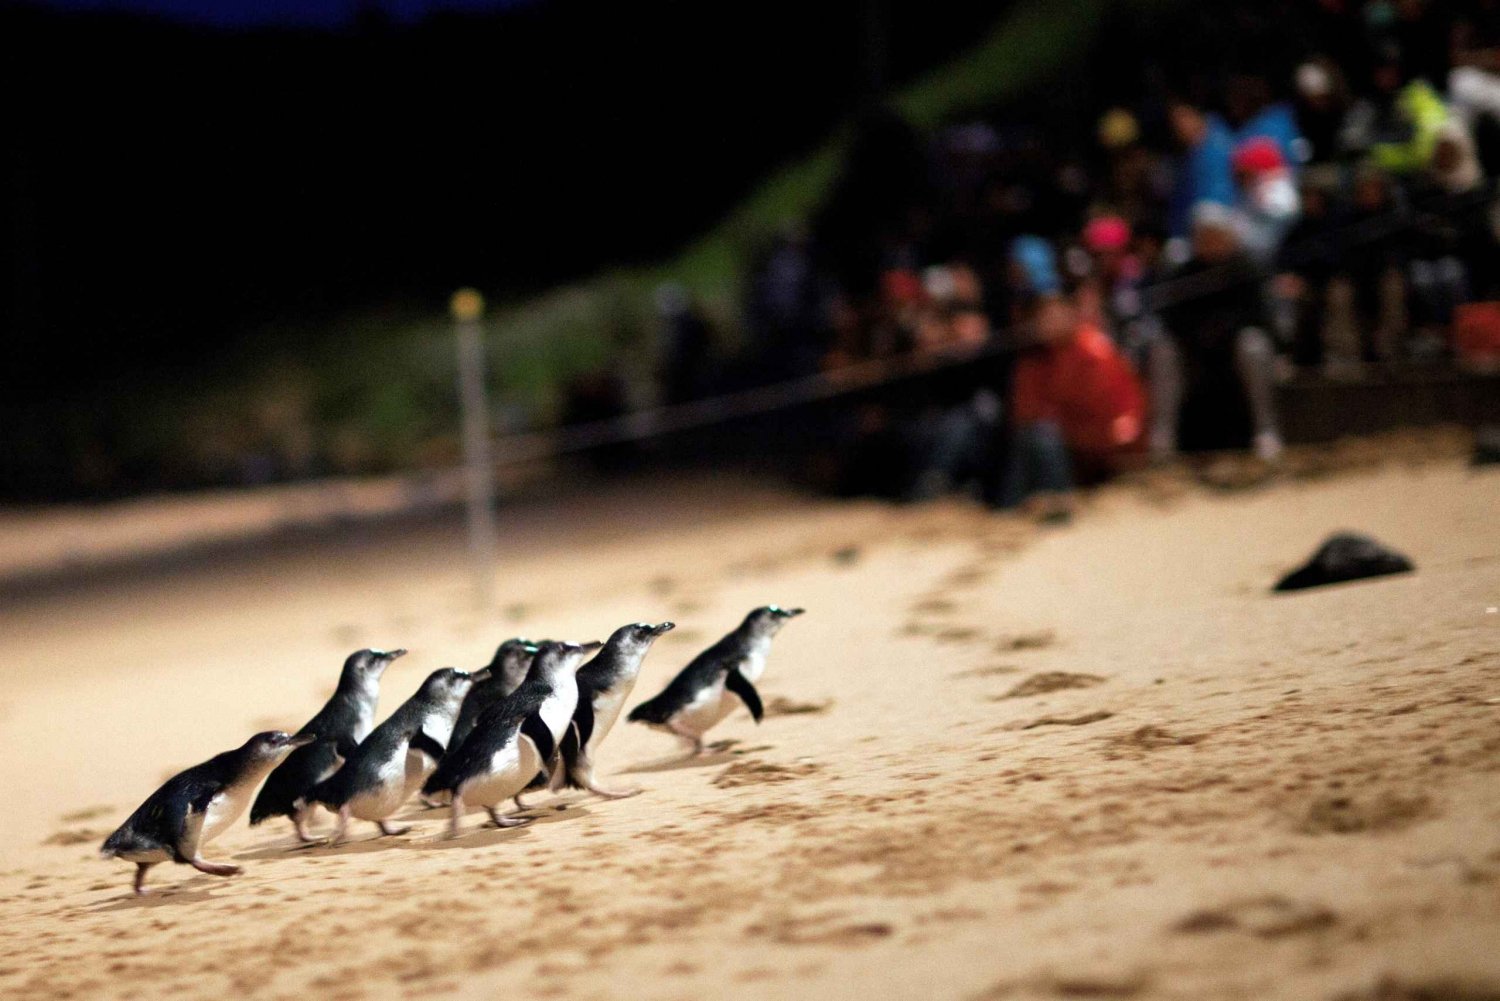 Penguin Parade: Biljett till allmän visning